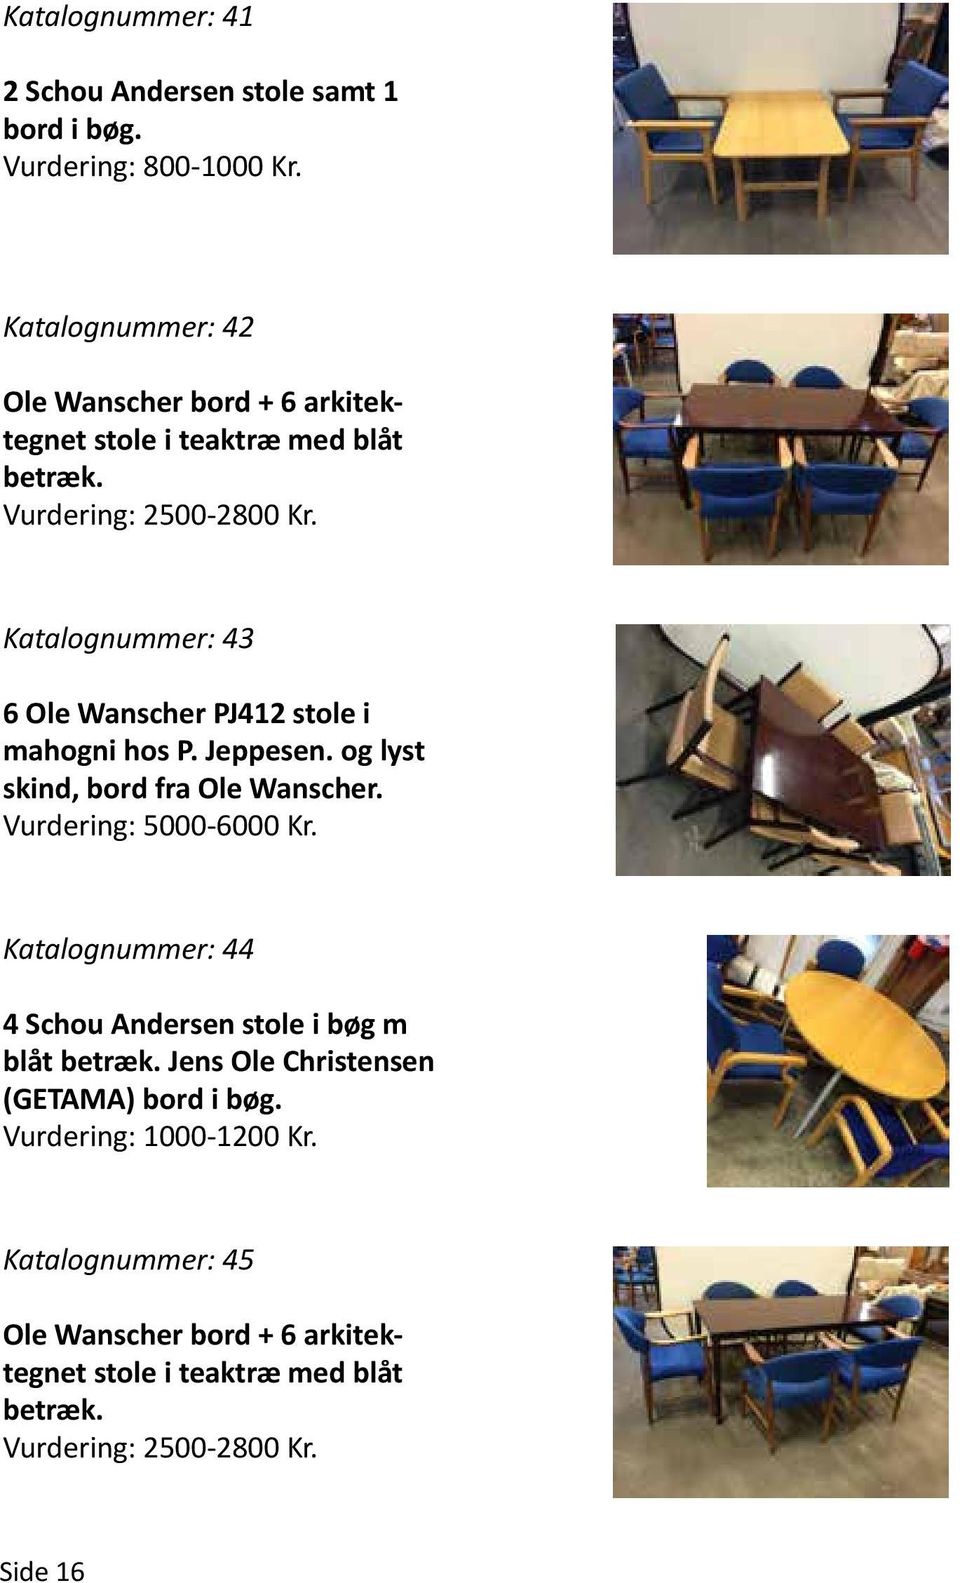 Katalognummer: 43 6 Ole Wanscher PJ412 stole i mahogni hos P. Jeppesen. og lyst skind, bord fra Ole Wanscher. Vurdering: 5000-6000 Kr.